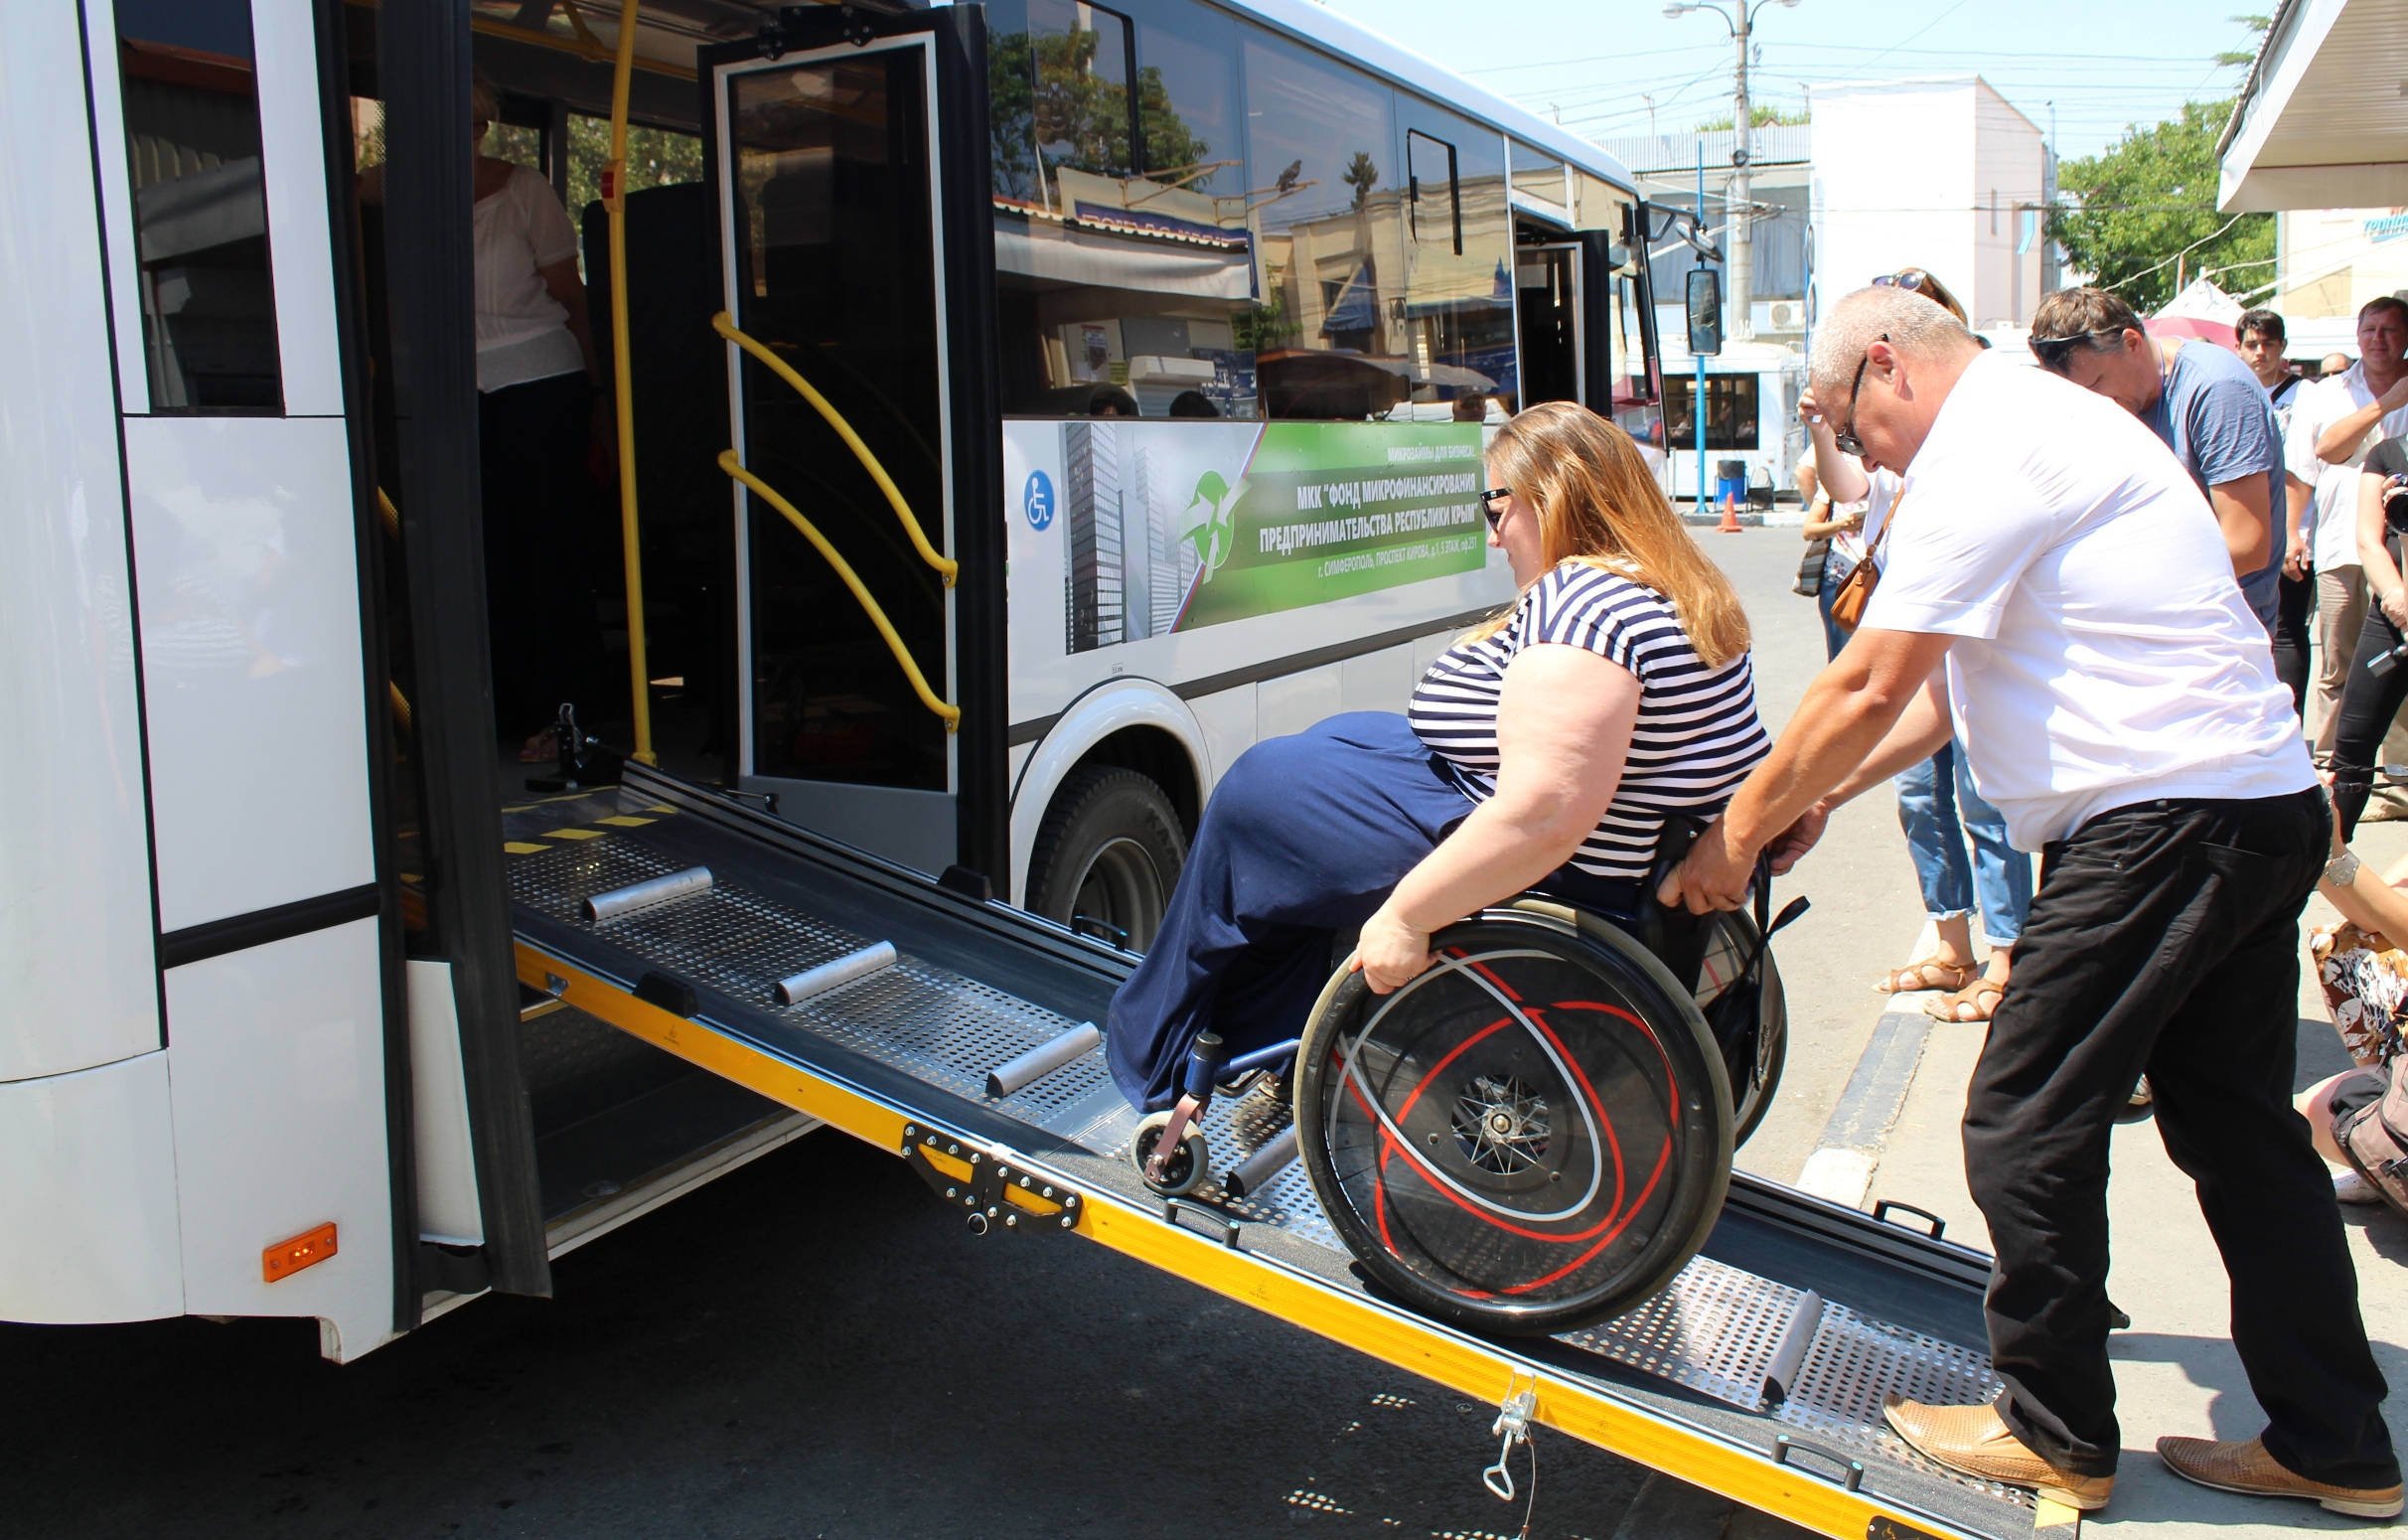 Транспортная доступность для инвалидов. Транспорт для инвалидов. Пандус в автобусе для инвалидов. Общественный транспорт для инвалидов. Аппарель для инвалидов в автобусах.